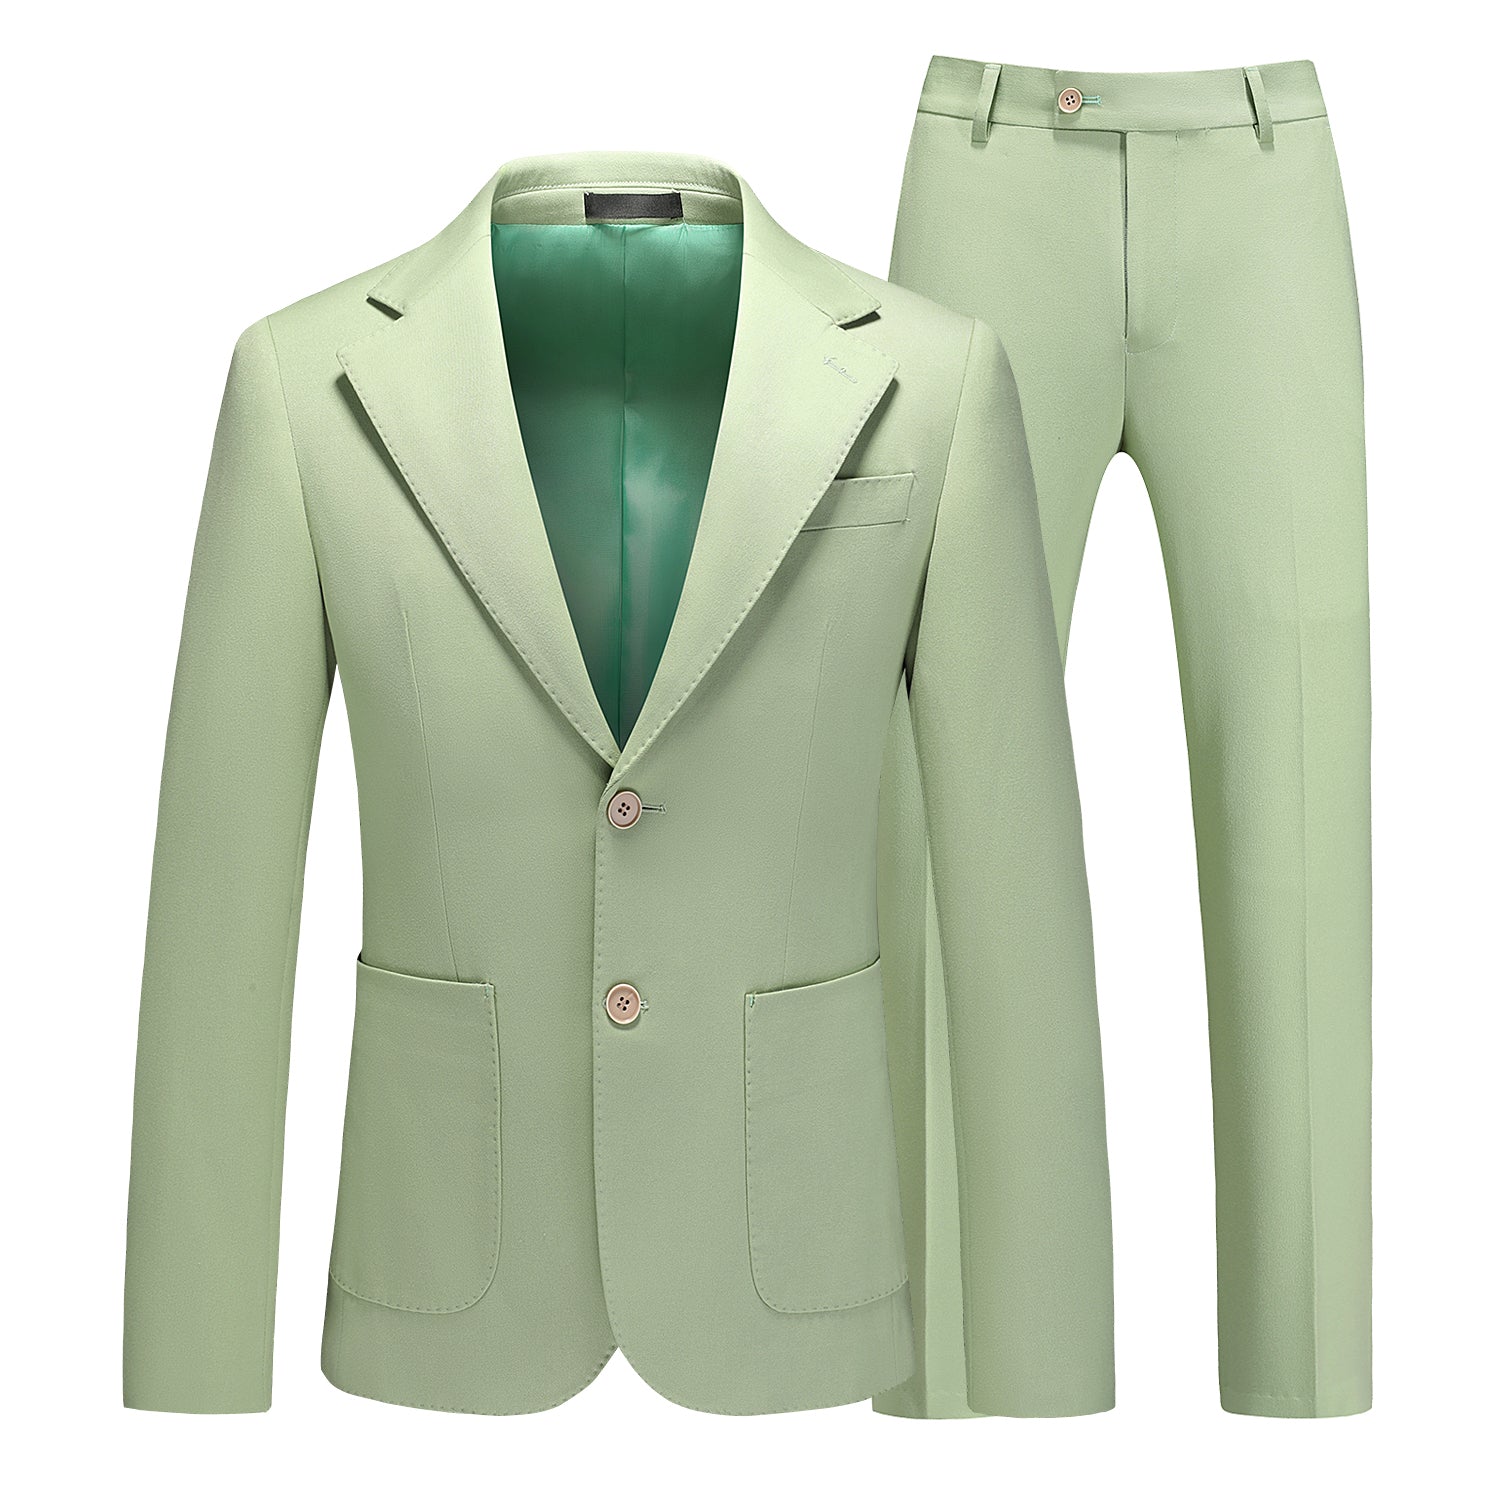 Men's Solid Green 2 Piece Suit 2 Button Closure